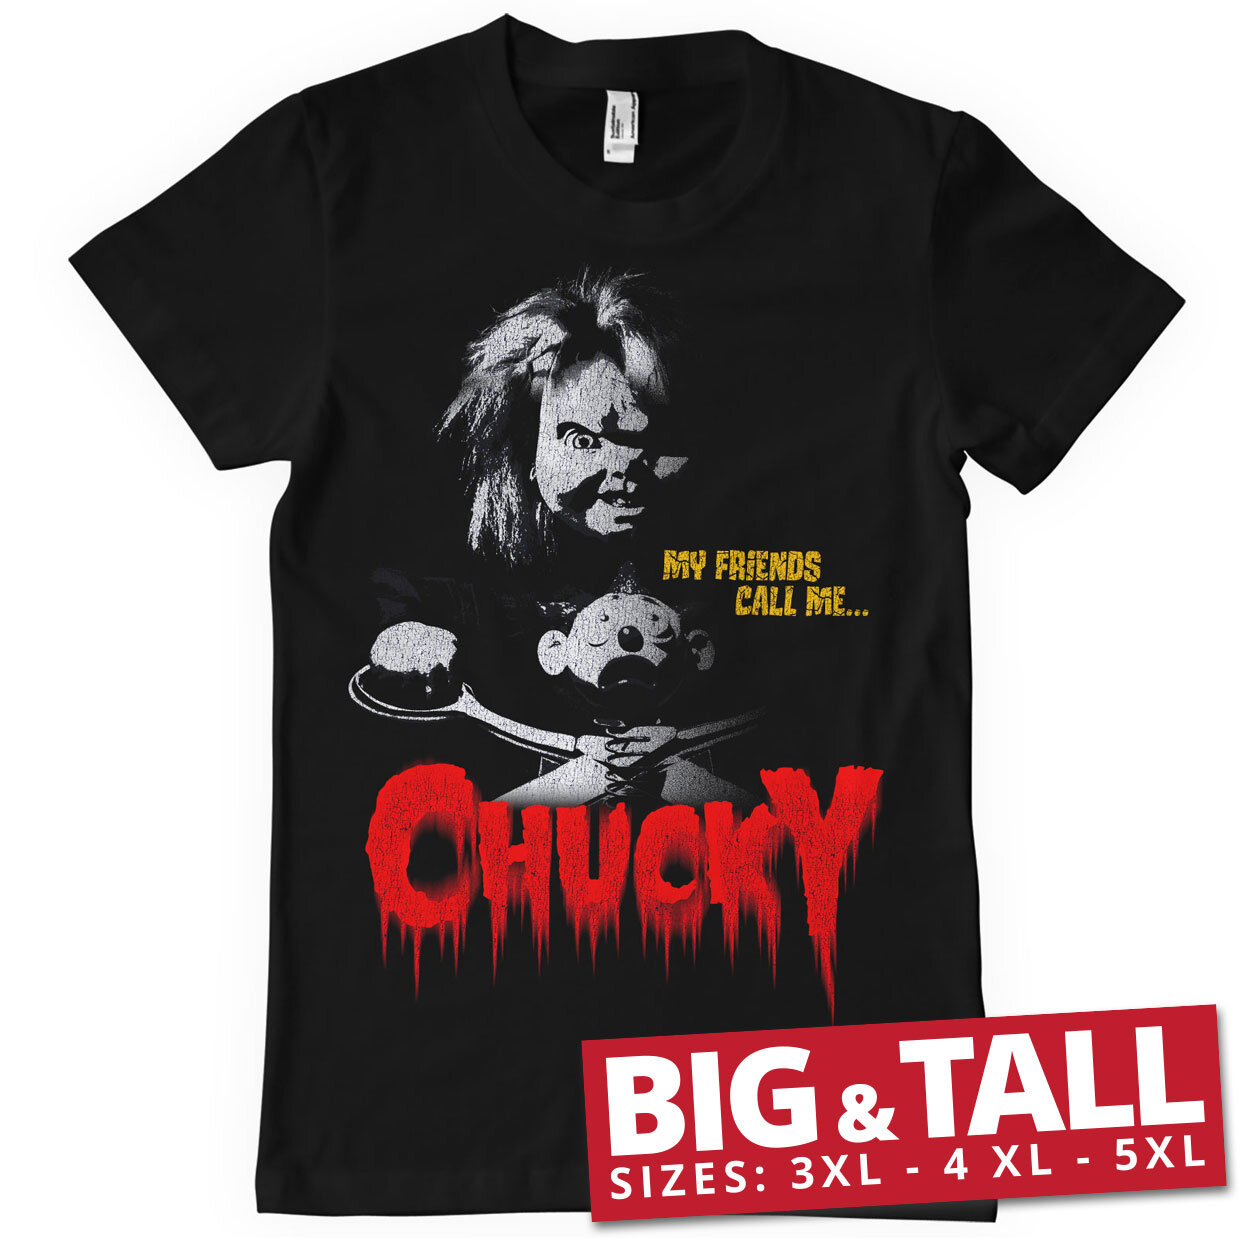 Call Me Chucky Big & Tall T-Shirt